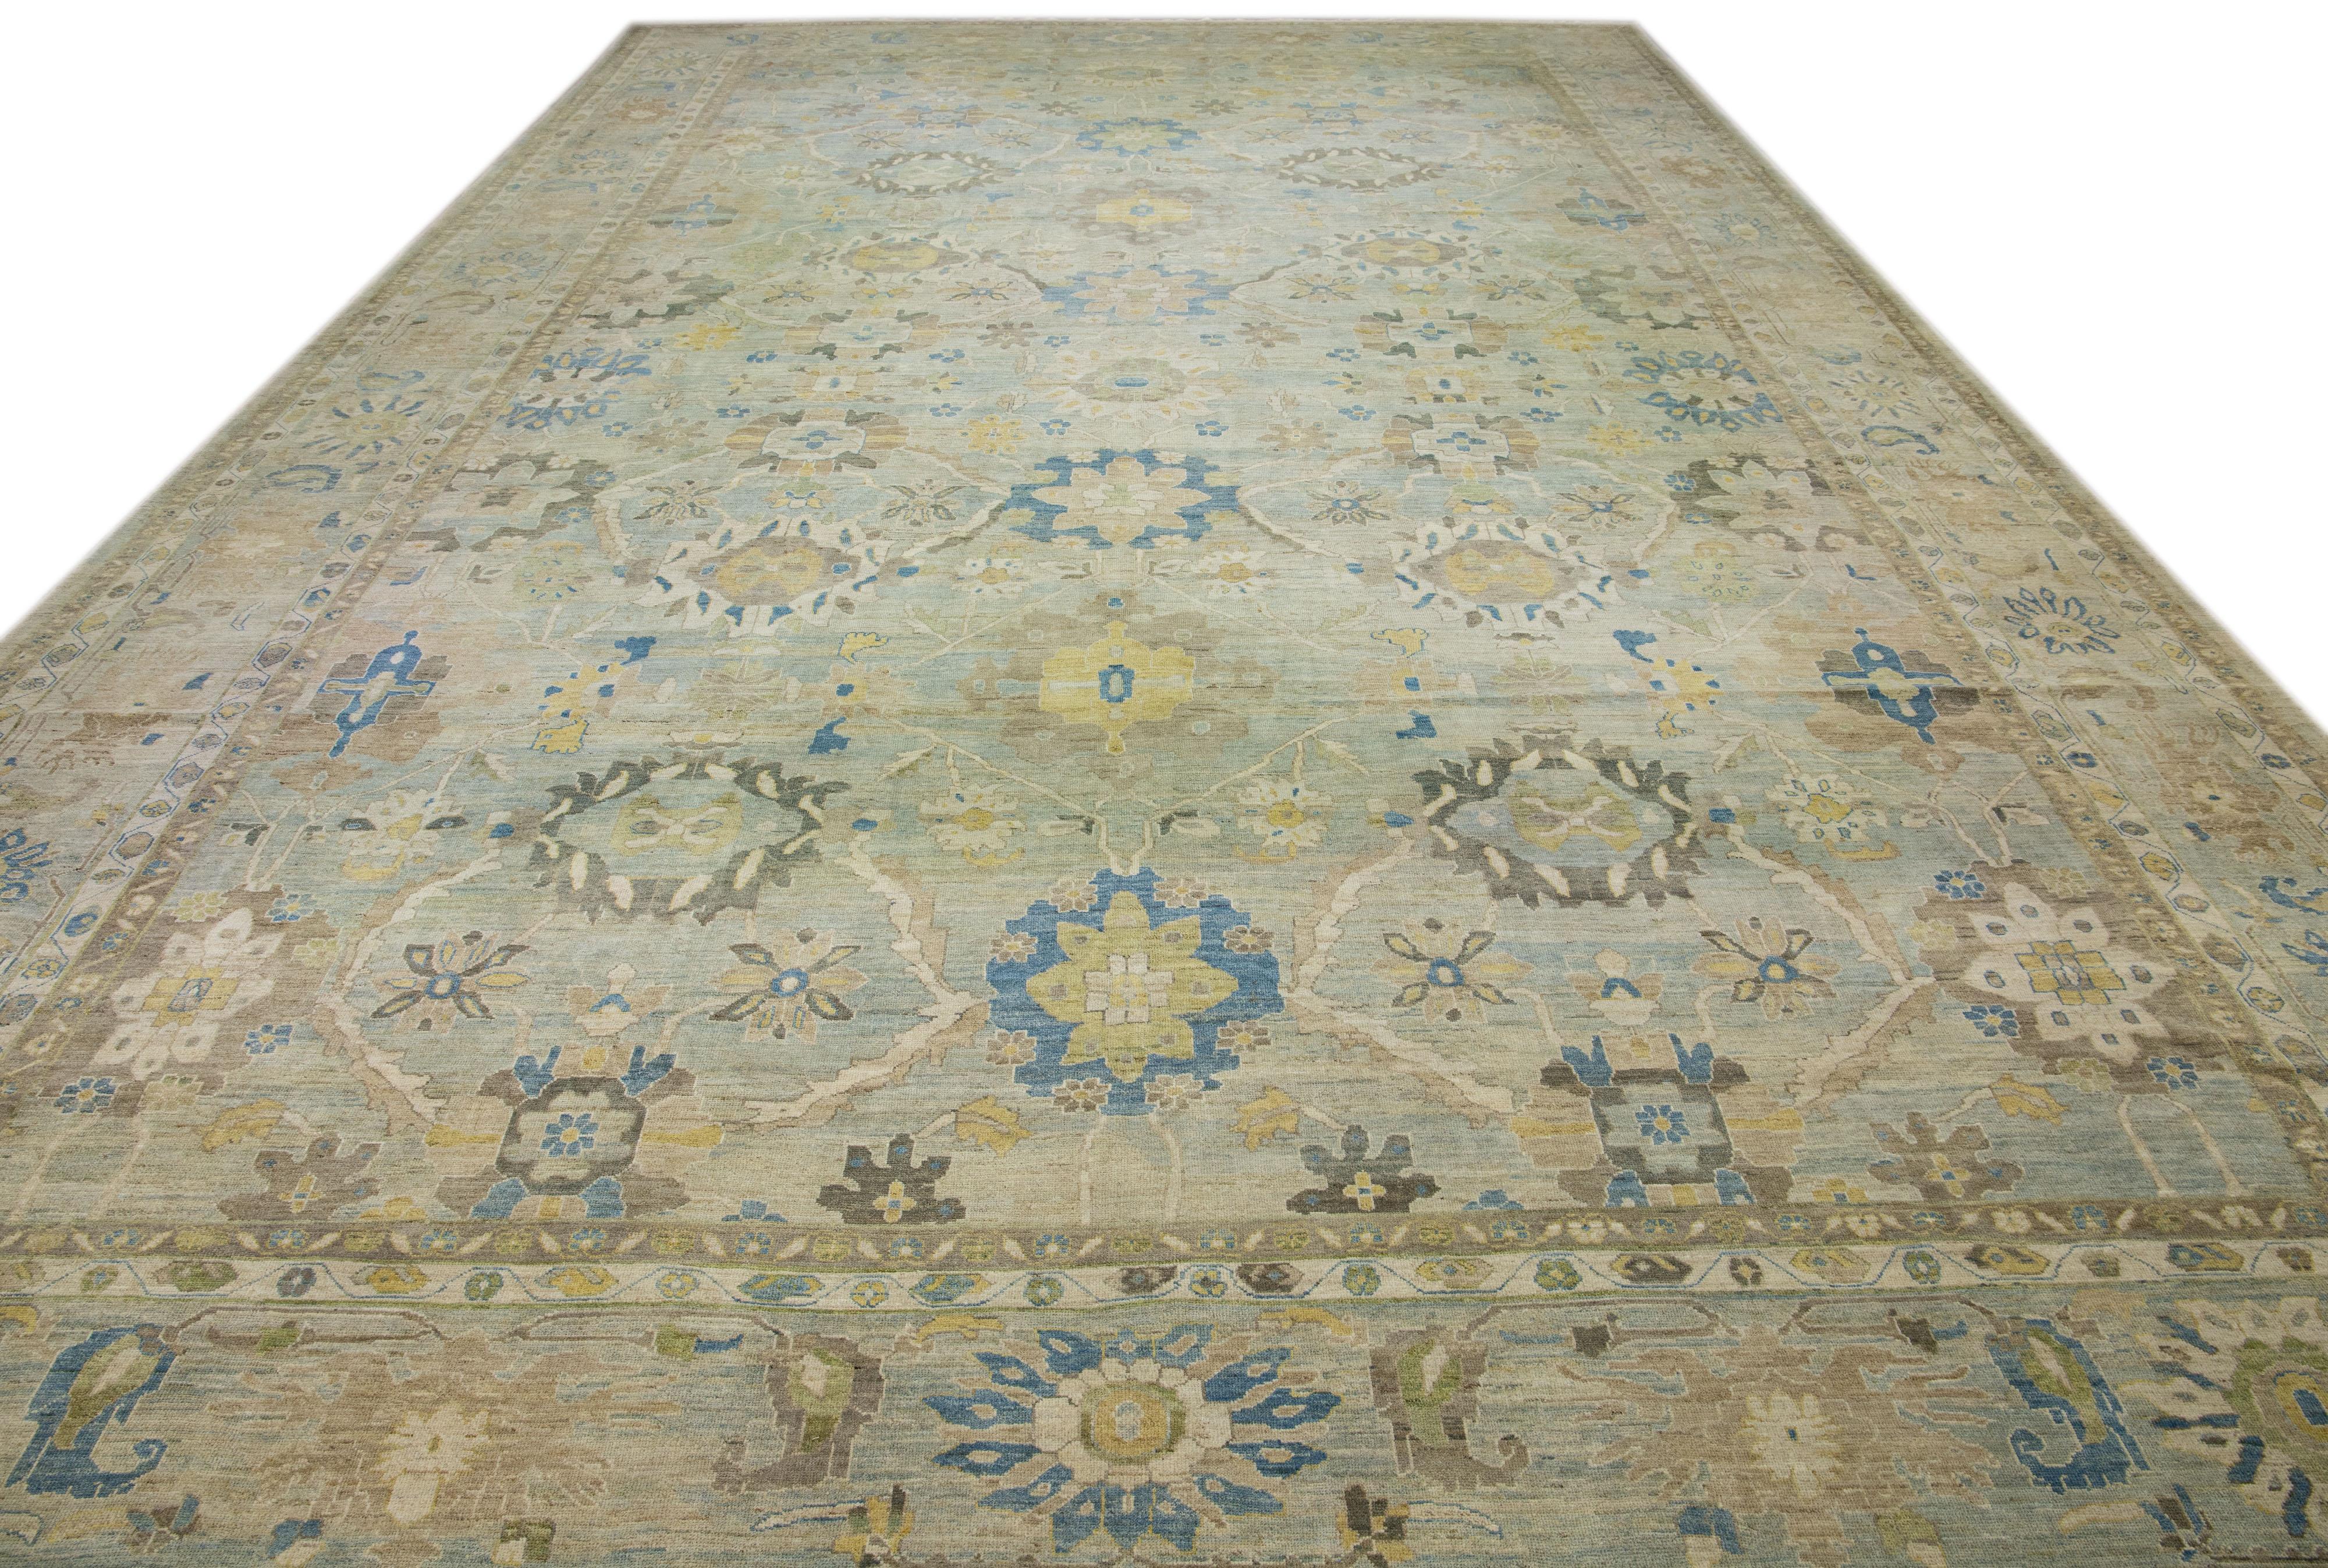 Il s'agit d'un superbe tapis en laine de Sultanabad, noué à la main, qui présente une belle palette de couleurs bleu clair. Il est doté d'un cadre sophistiqué aux reflets subtils qui se fondent harmonieusement dans un motif floral exquis et